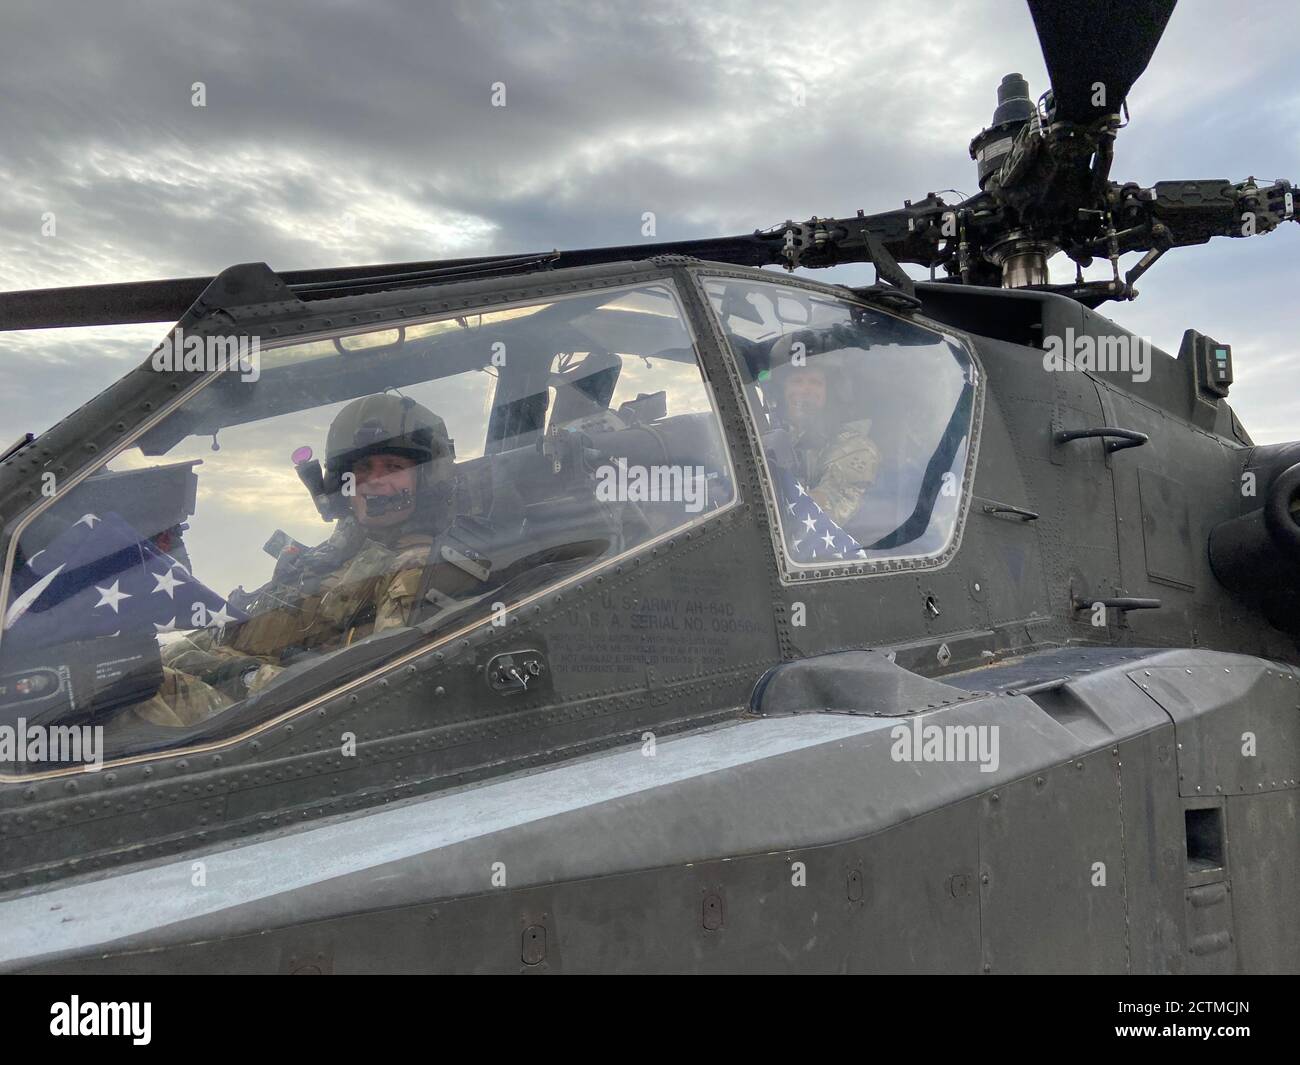 Chief Warrant Officer 4 Isaac Smith (vorne) und Chief Warrant Officer 4 Stewart Smith (hinten) in einem APH-64D Apache-Hubschrauber, 31. August 2020, Mazar-i-Sharif, Afghanistan. (Foto mit freundlicher Genehmigung von CW4 Isaac und Stewart Smith) Stockfoto